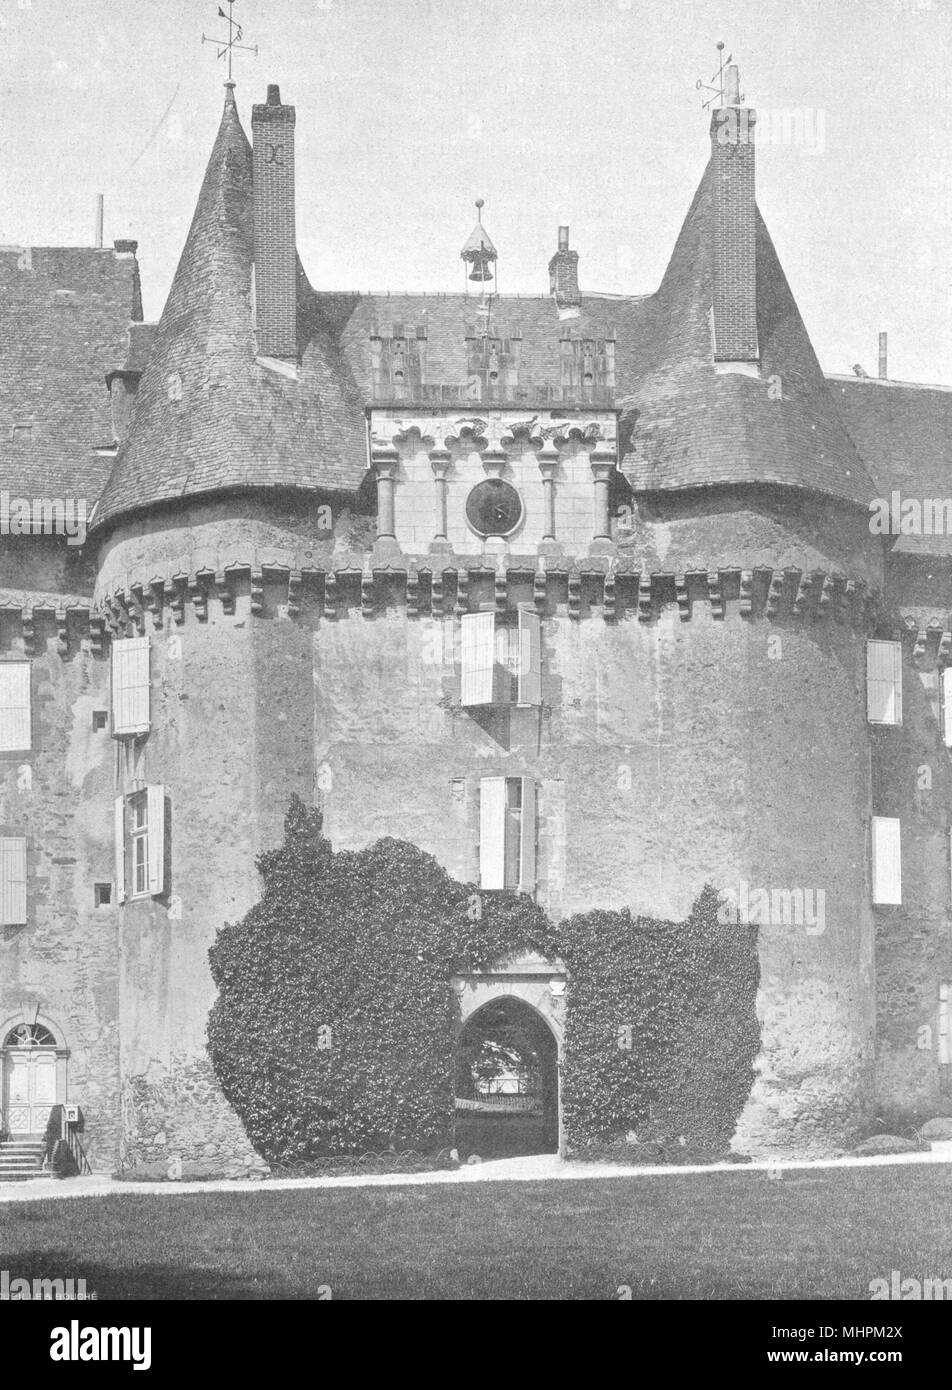 Chateau de pompadour hi-res stock photography and images - Alamy